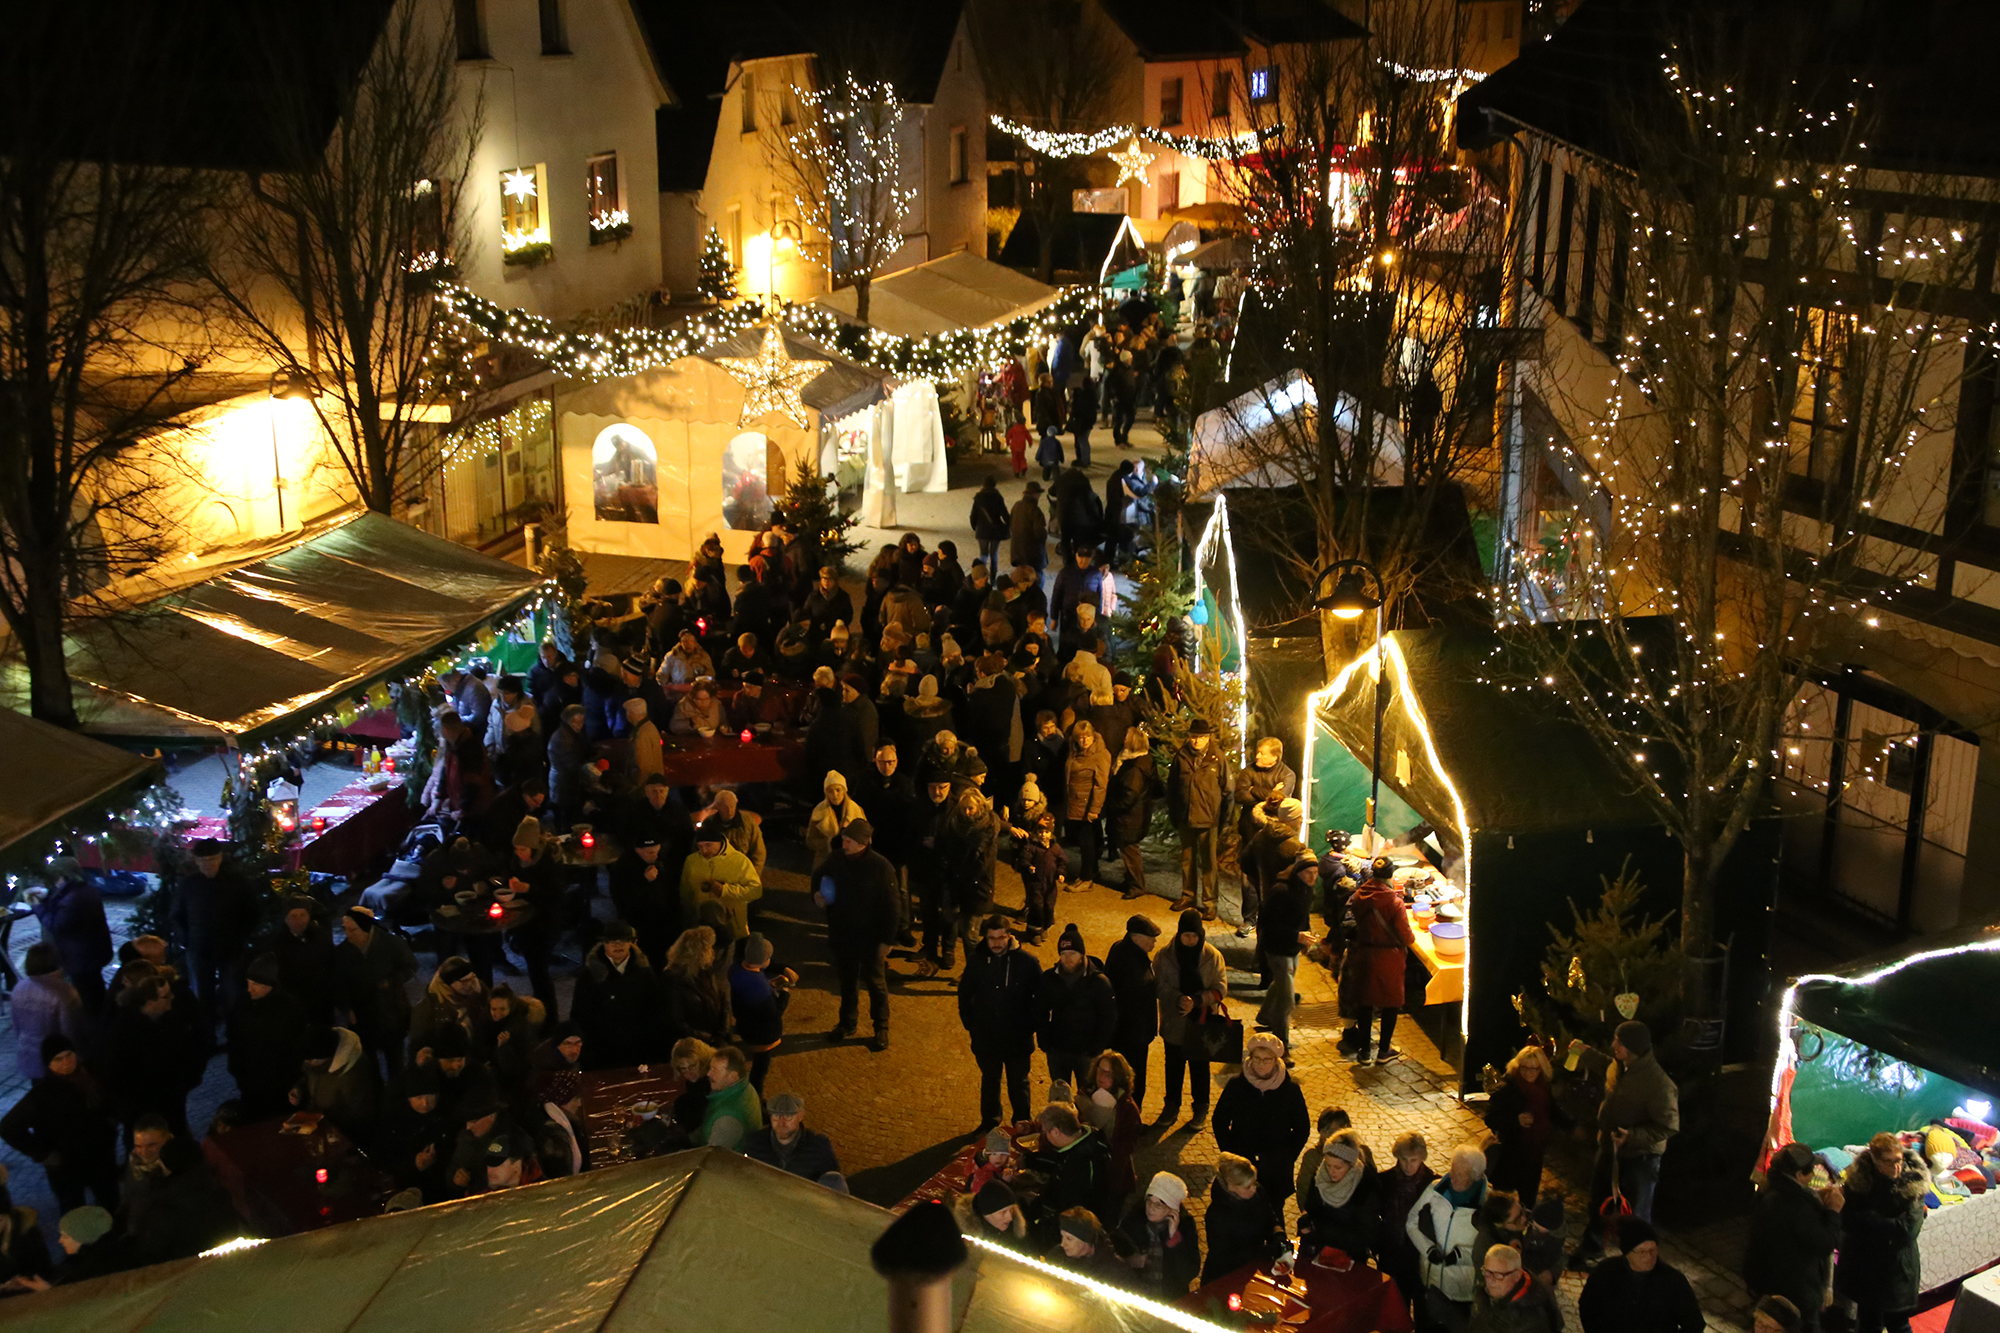  Der Odenheimer Weihnachtsmarkt im Ortskern zieht jährlich Besucher aus nah und fern an 